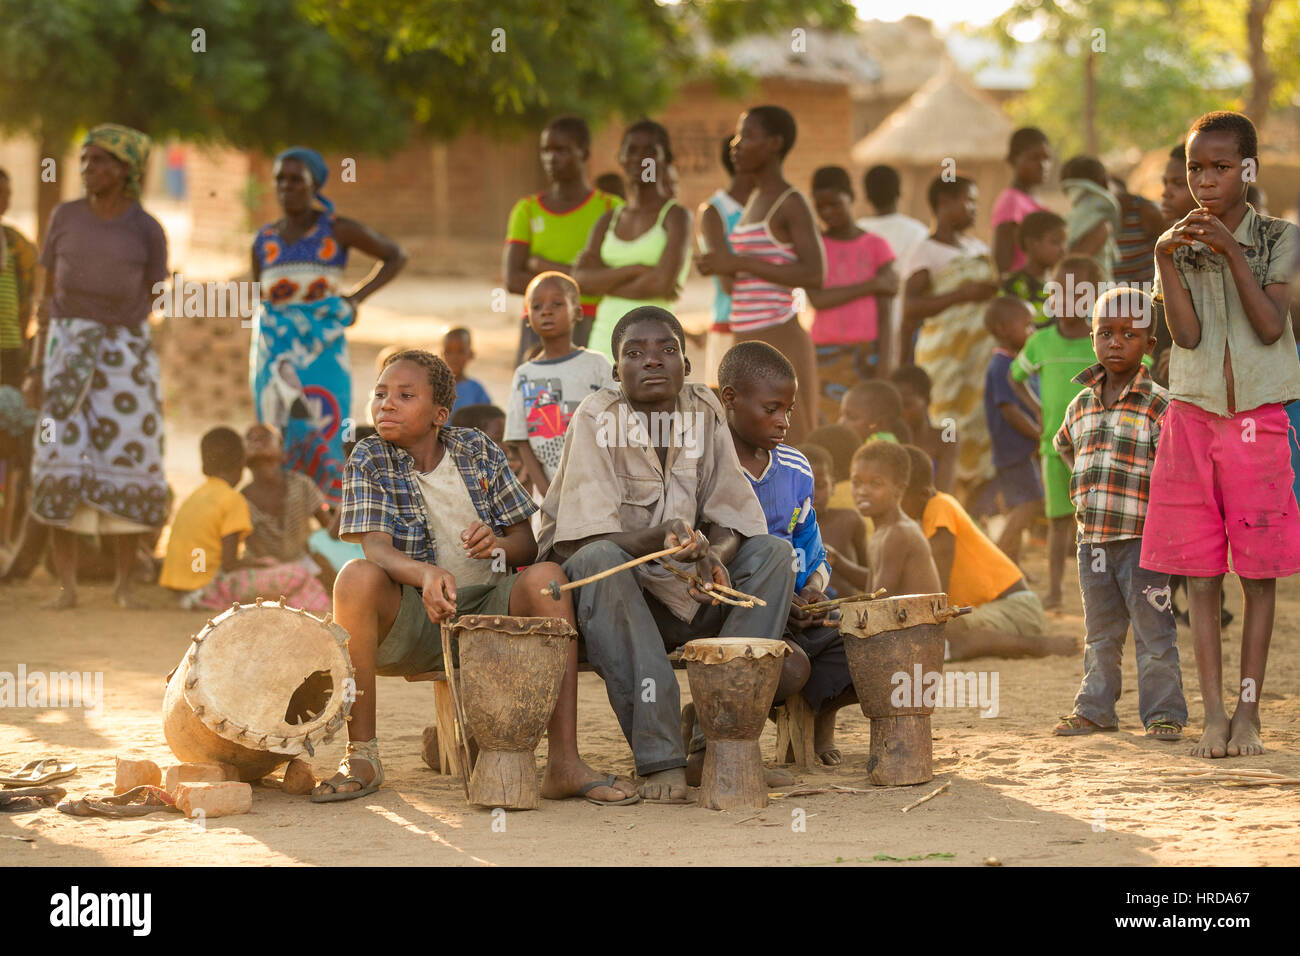 Villages sur la frontière de la Réserve de faune Majete offrent des expériences culturelles pour en savoir plus sur la douane communautaire dans les régions rurales du Malawi, p. ex. Gule Wamkulu. Banque D'Images